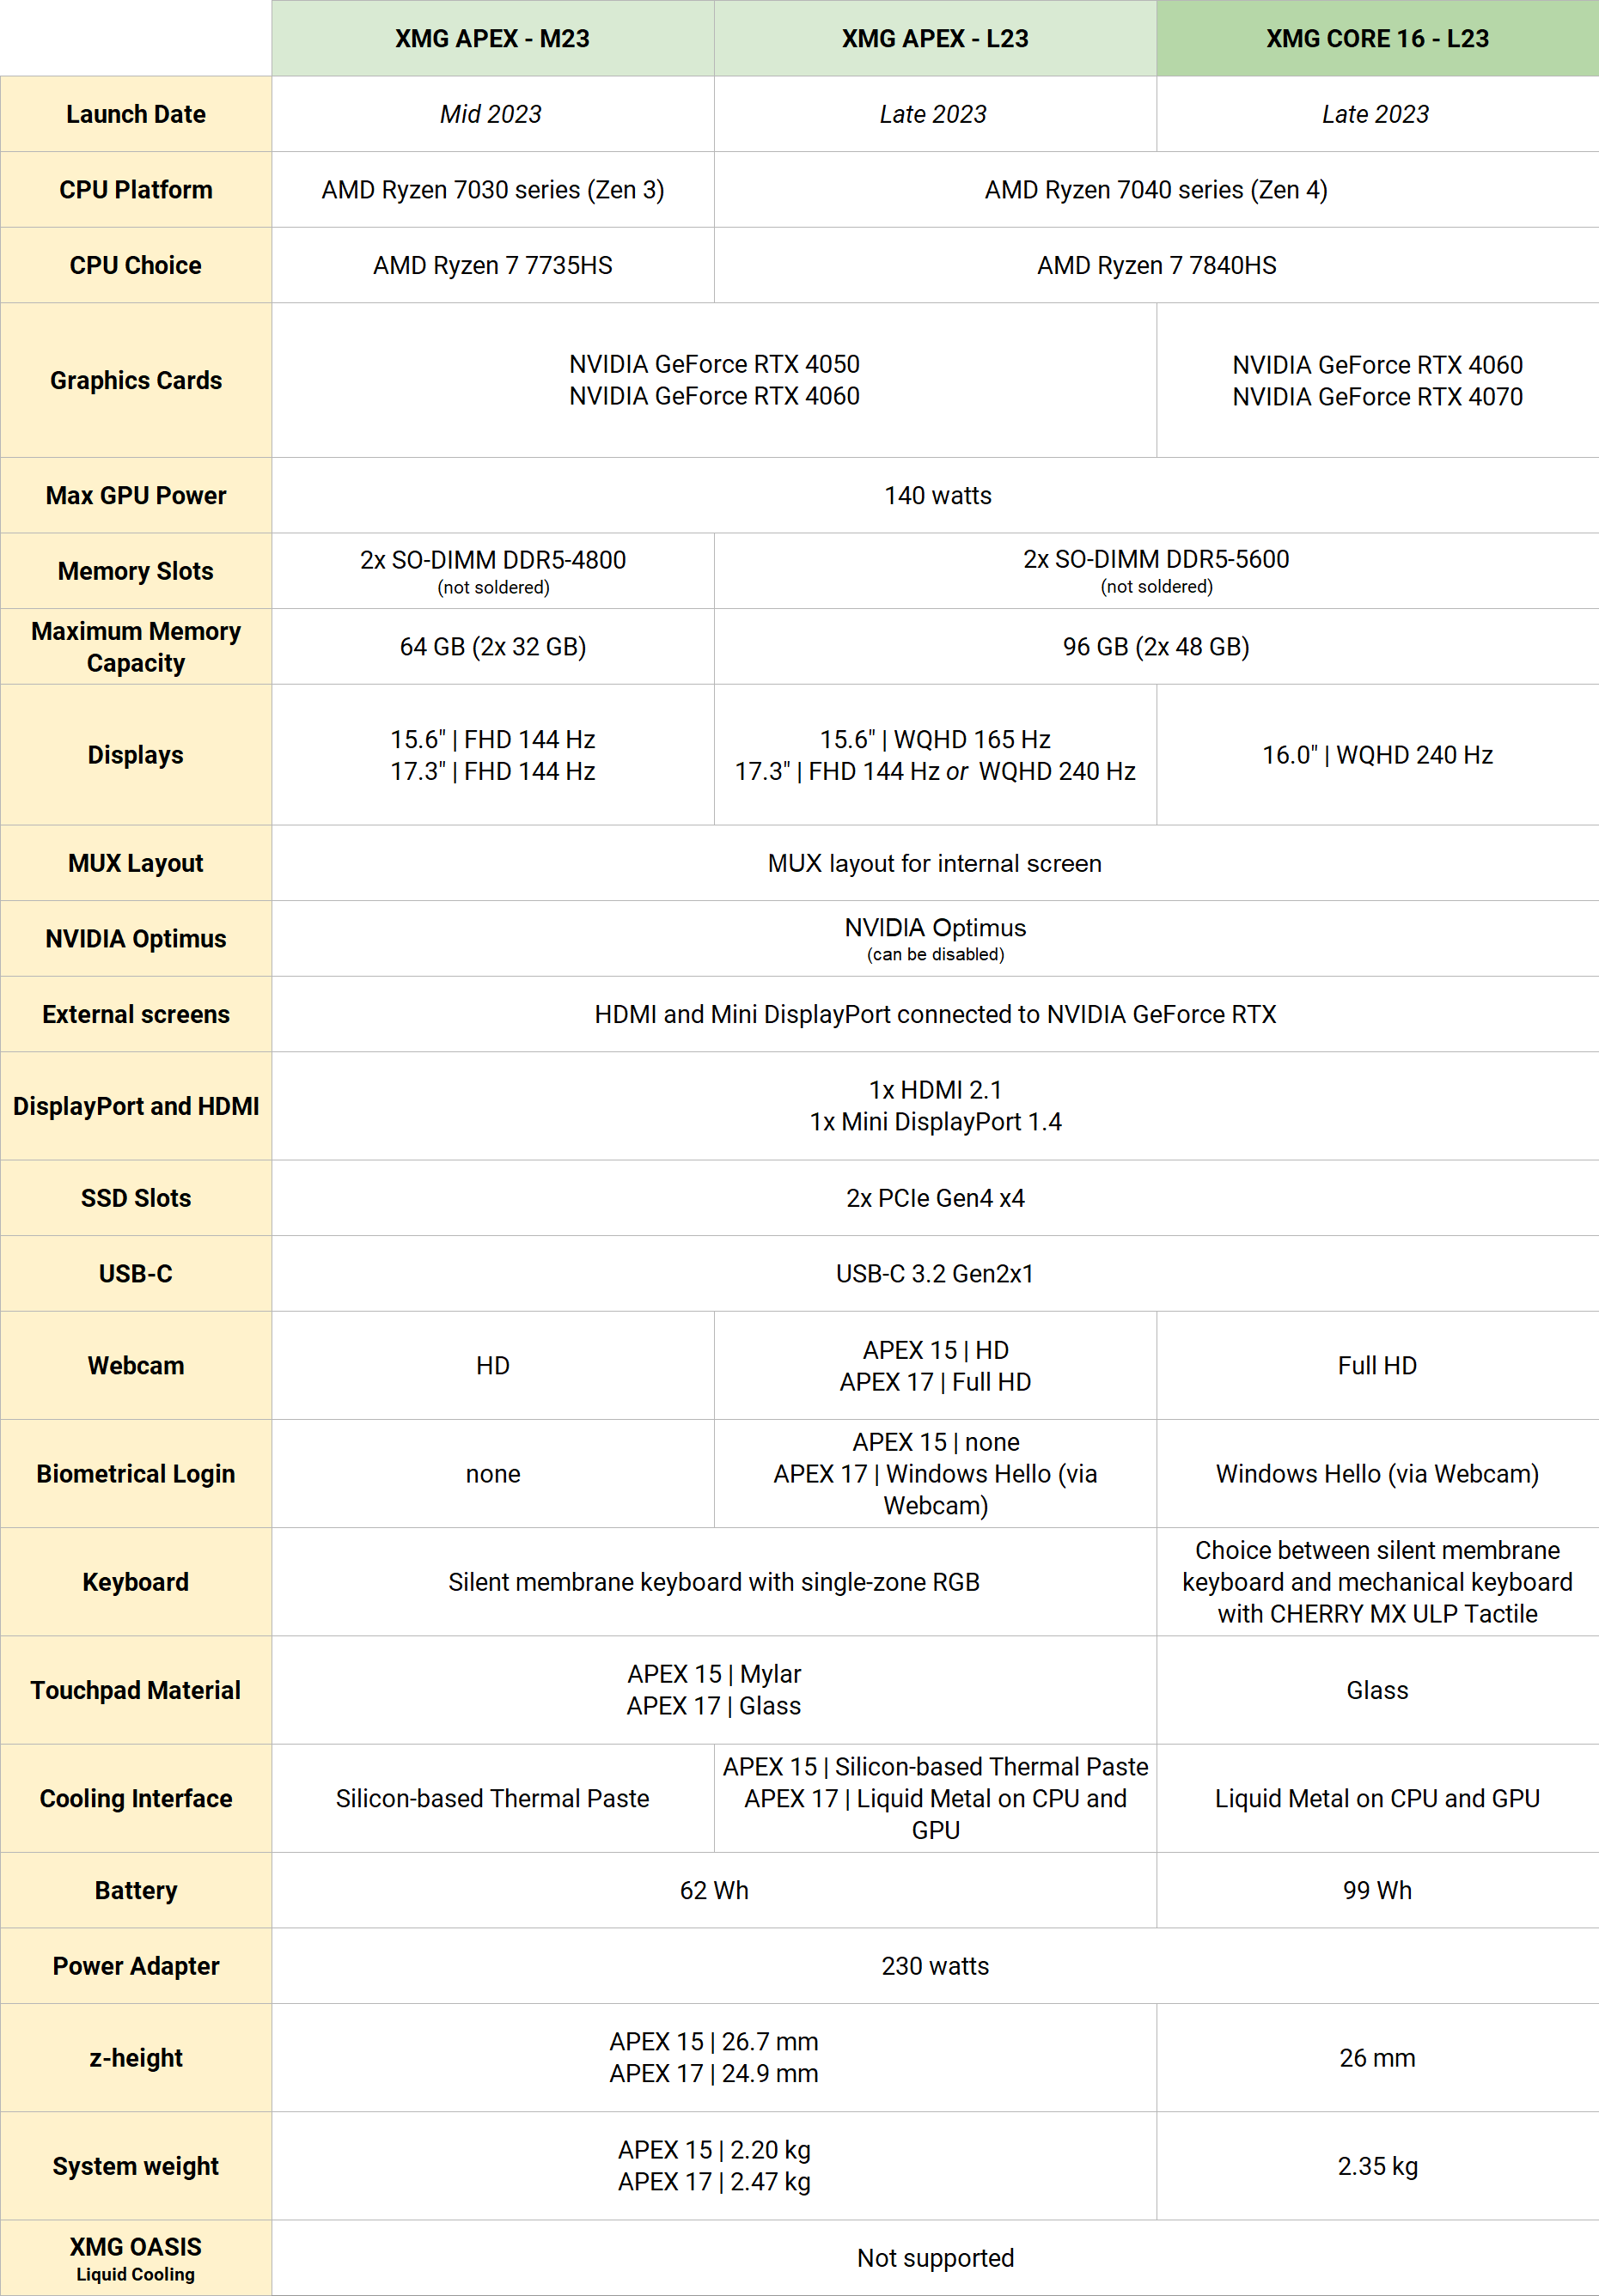 xmg-apex-core_2023_spec-comparison-table.png